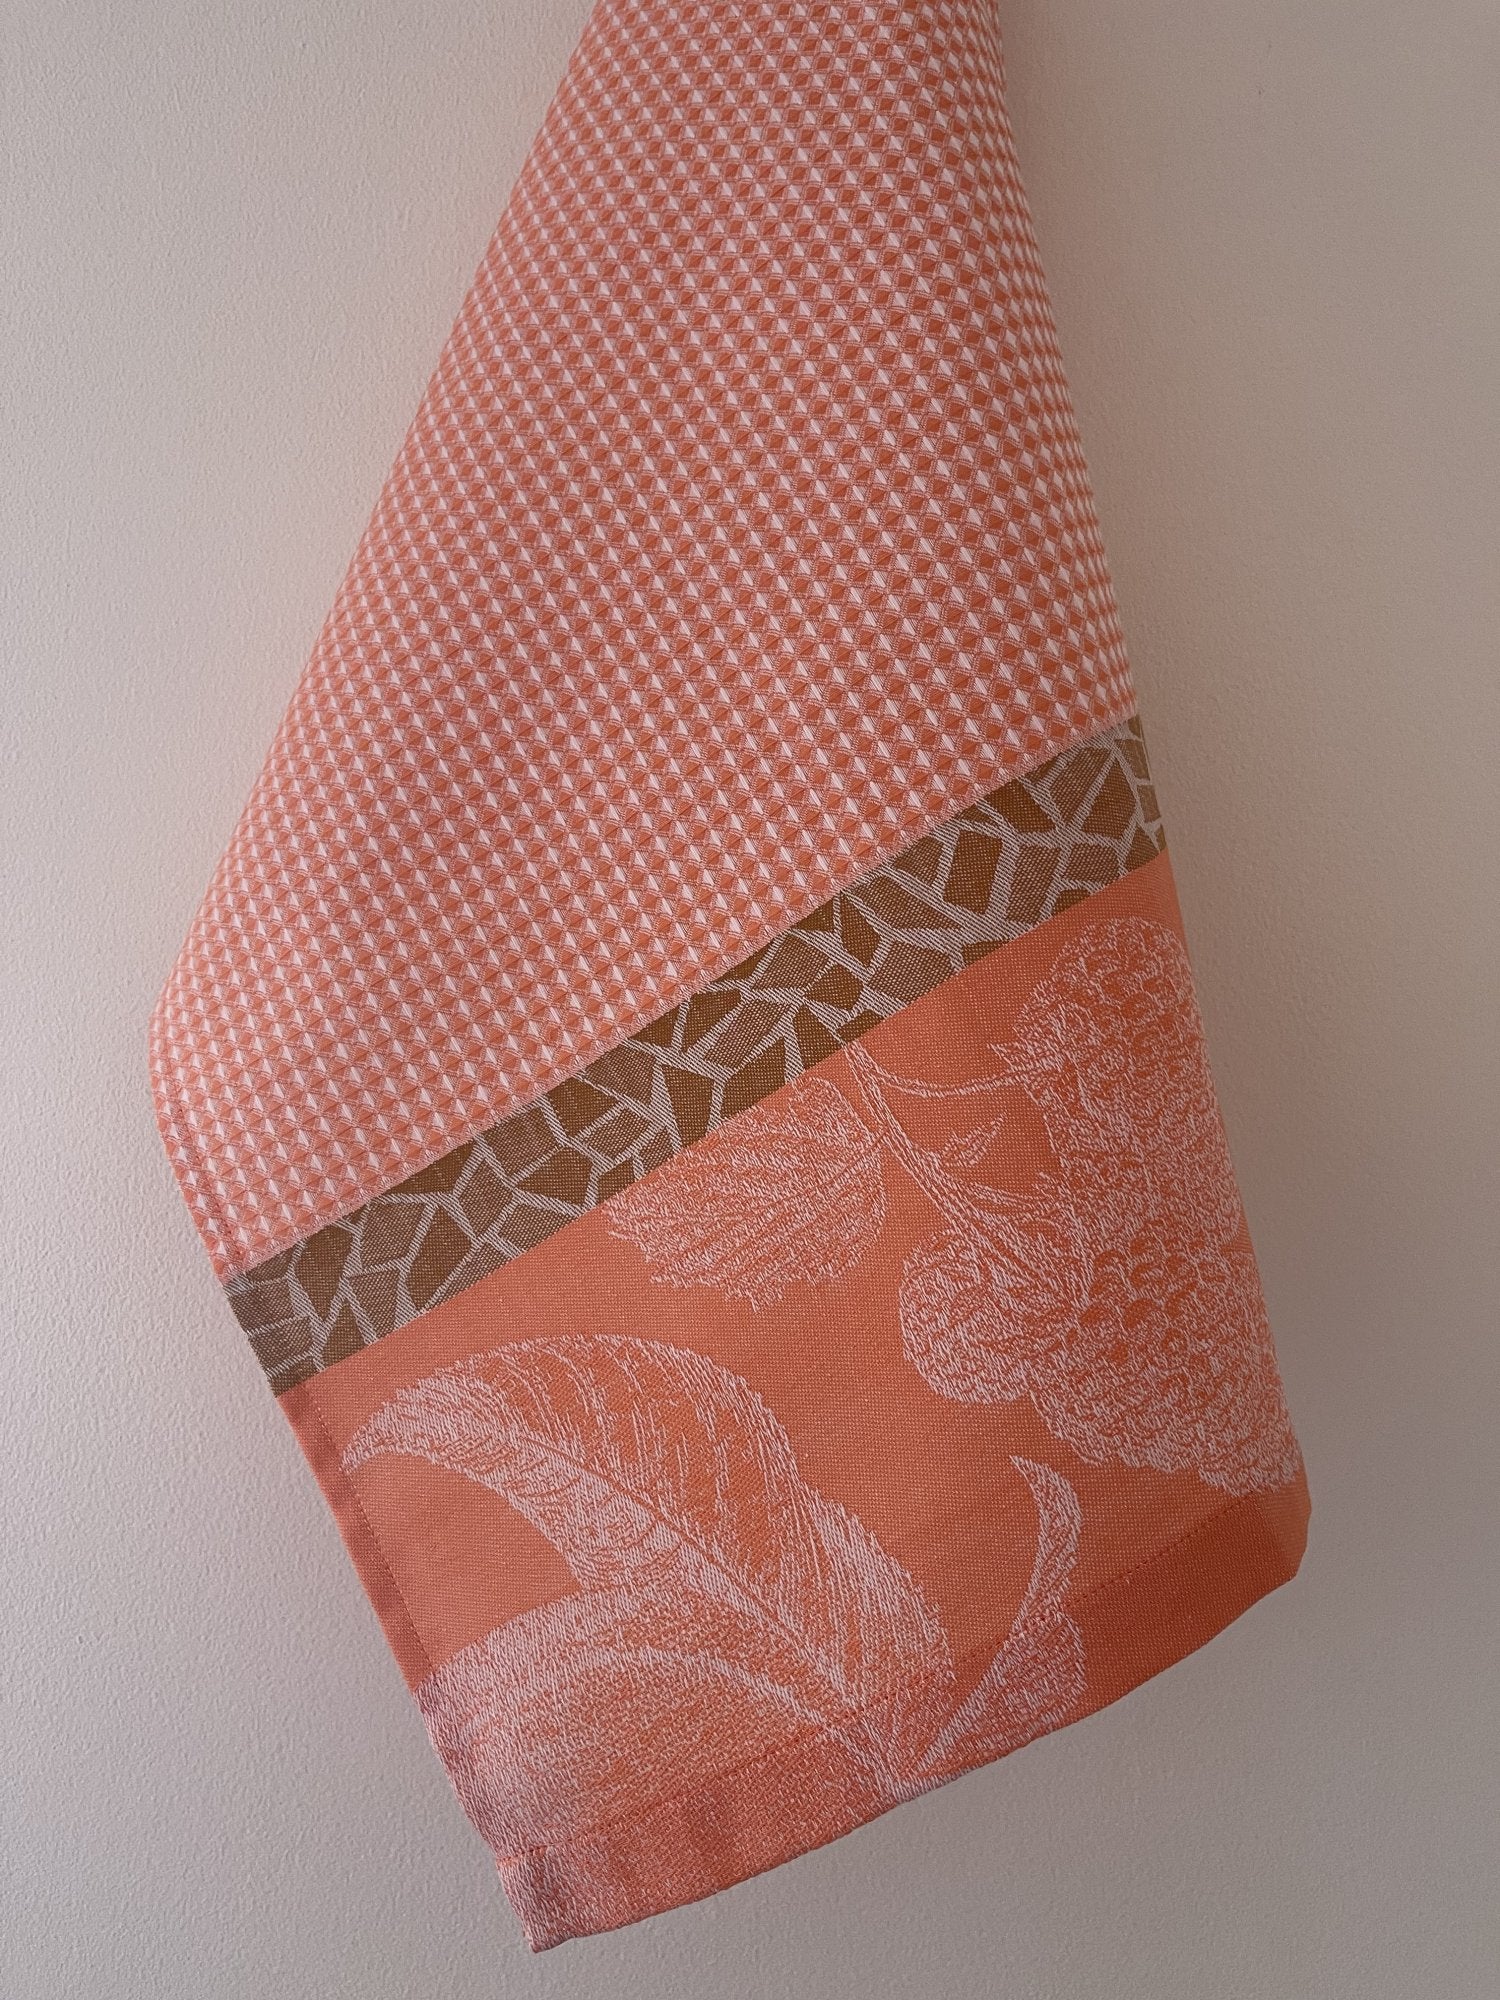 Jacquard Francais " De Saison - Fruits " (Apricot), Woven cotton hand towel. Made in France.